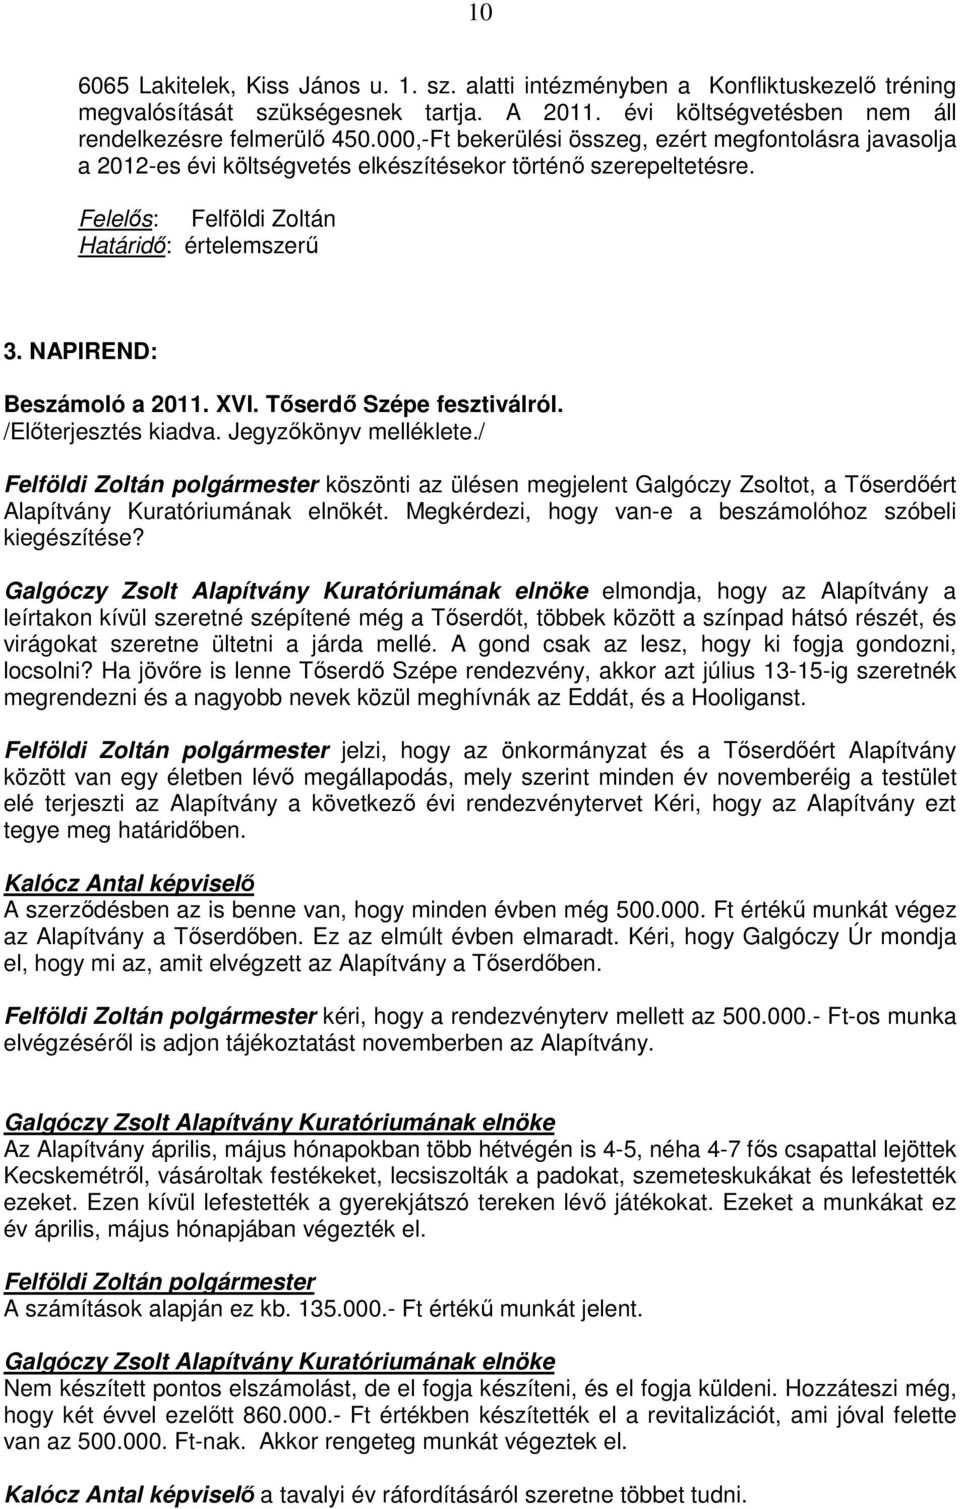 NAPIREND: Beszámoló a 2011. XVI. Tıserdı Szépe fesztiválról. /Elıterjesztés kiadva. Jegyzıkönyv melléklete.